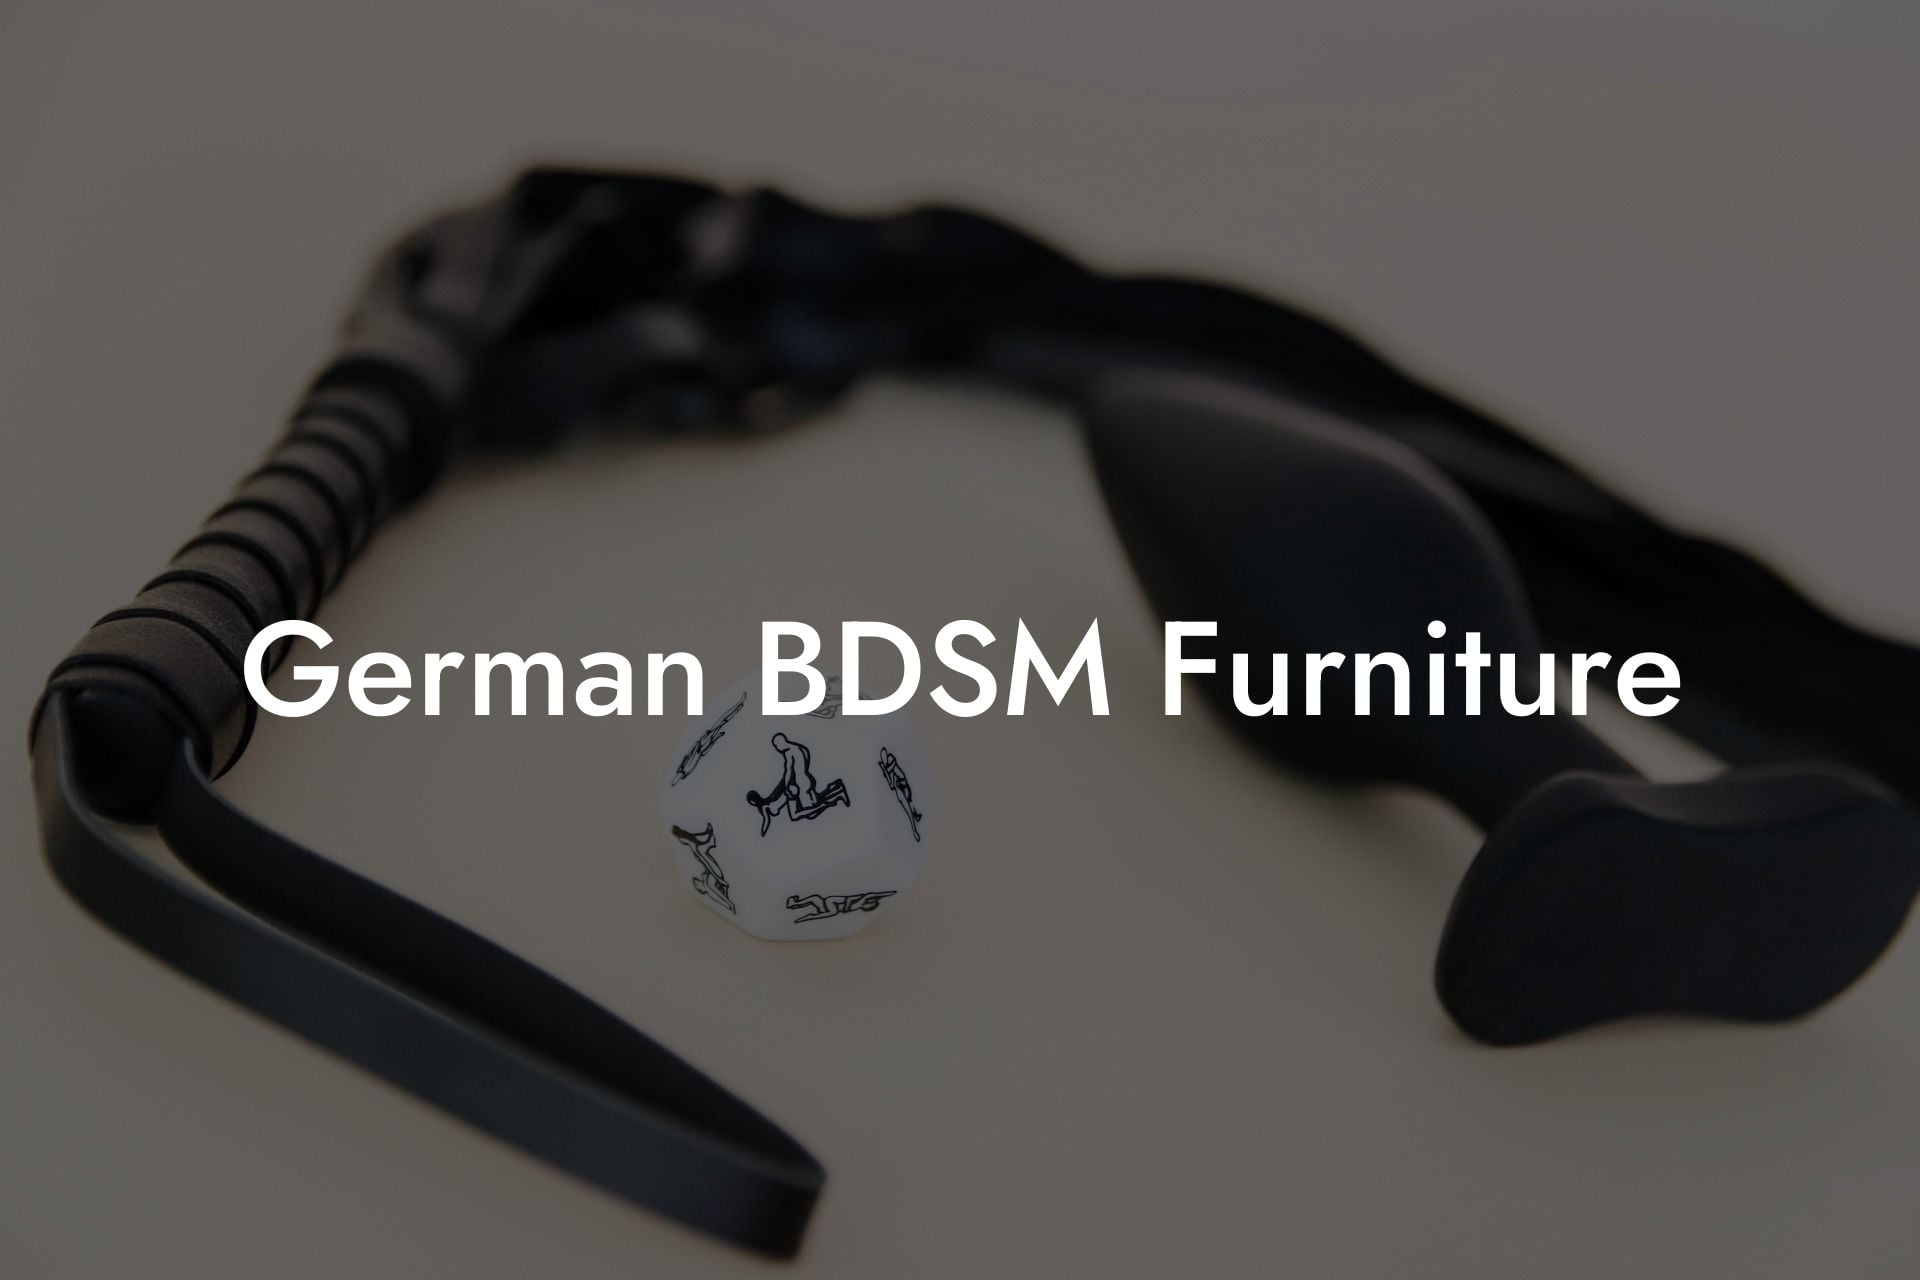 German BDSM Furniture